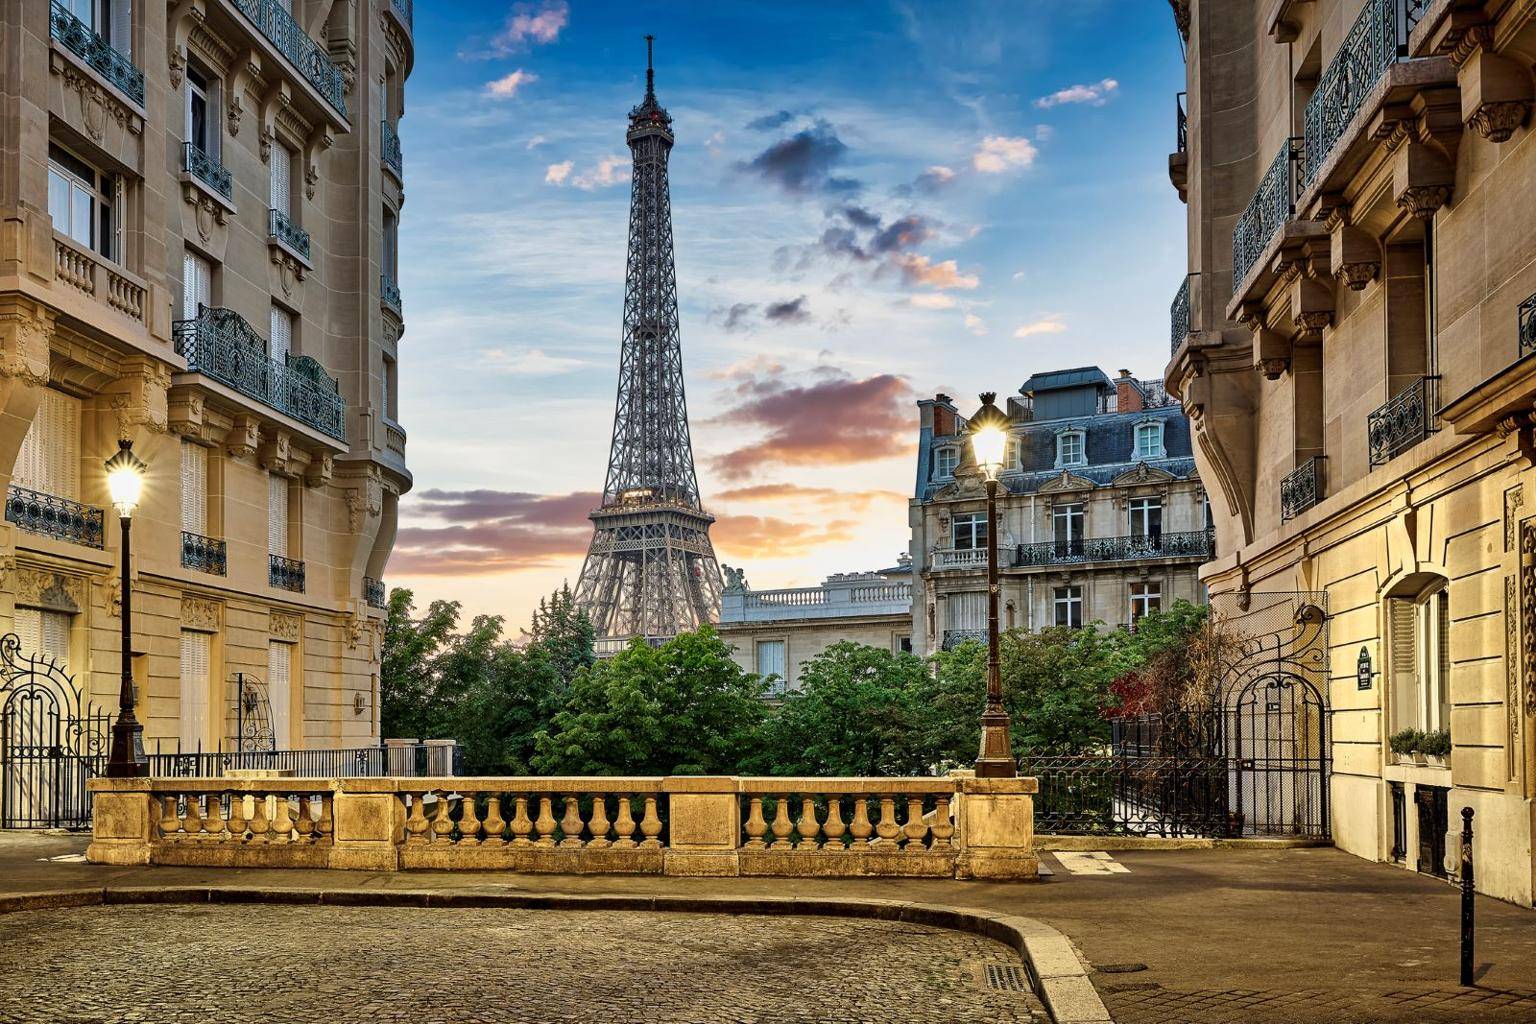 Le Grand-Paris offre des opportunités d’investissement pour les acquéreurs immobiliers crédit photo : GettyImages